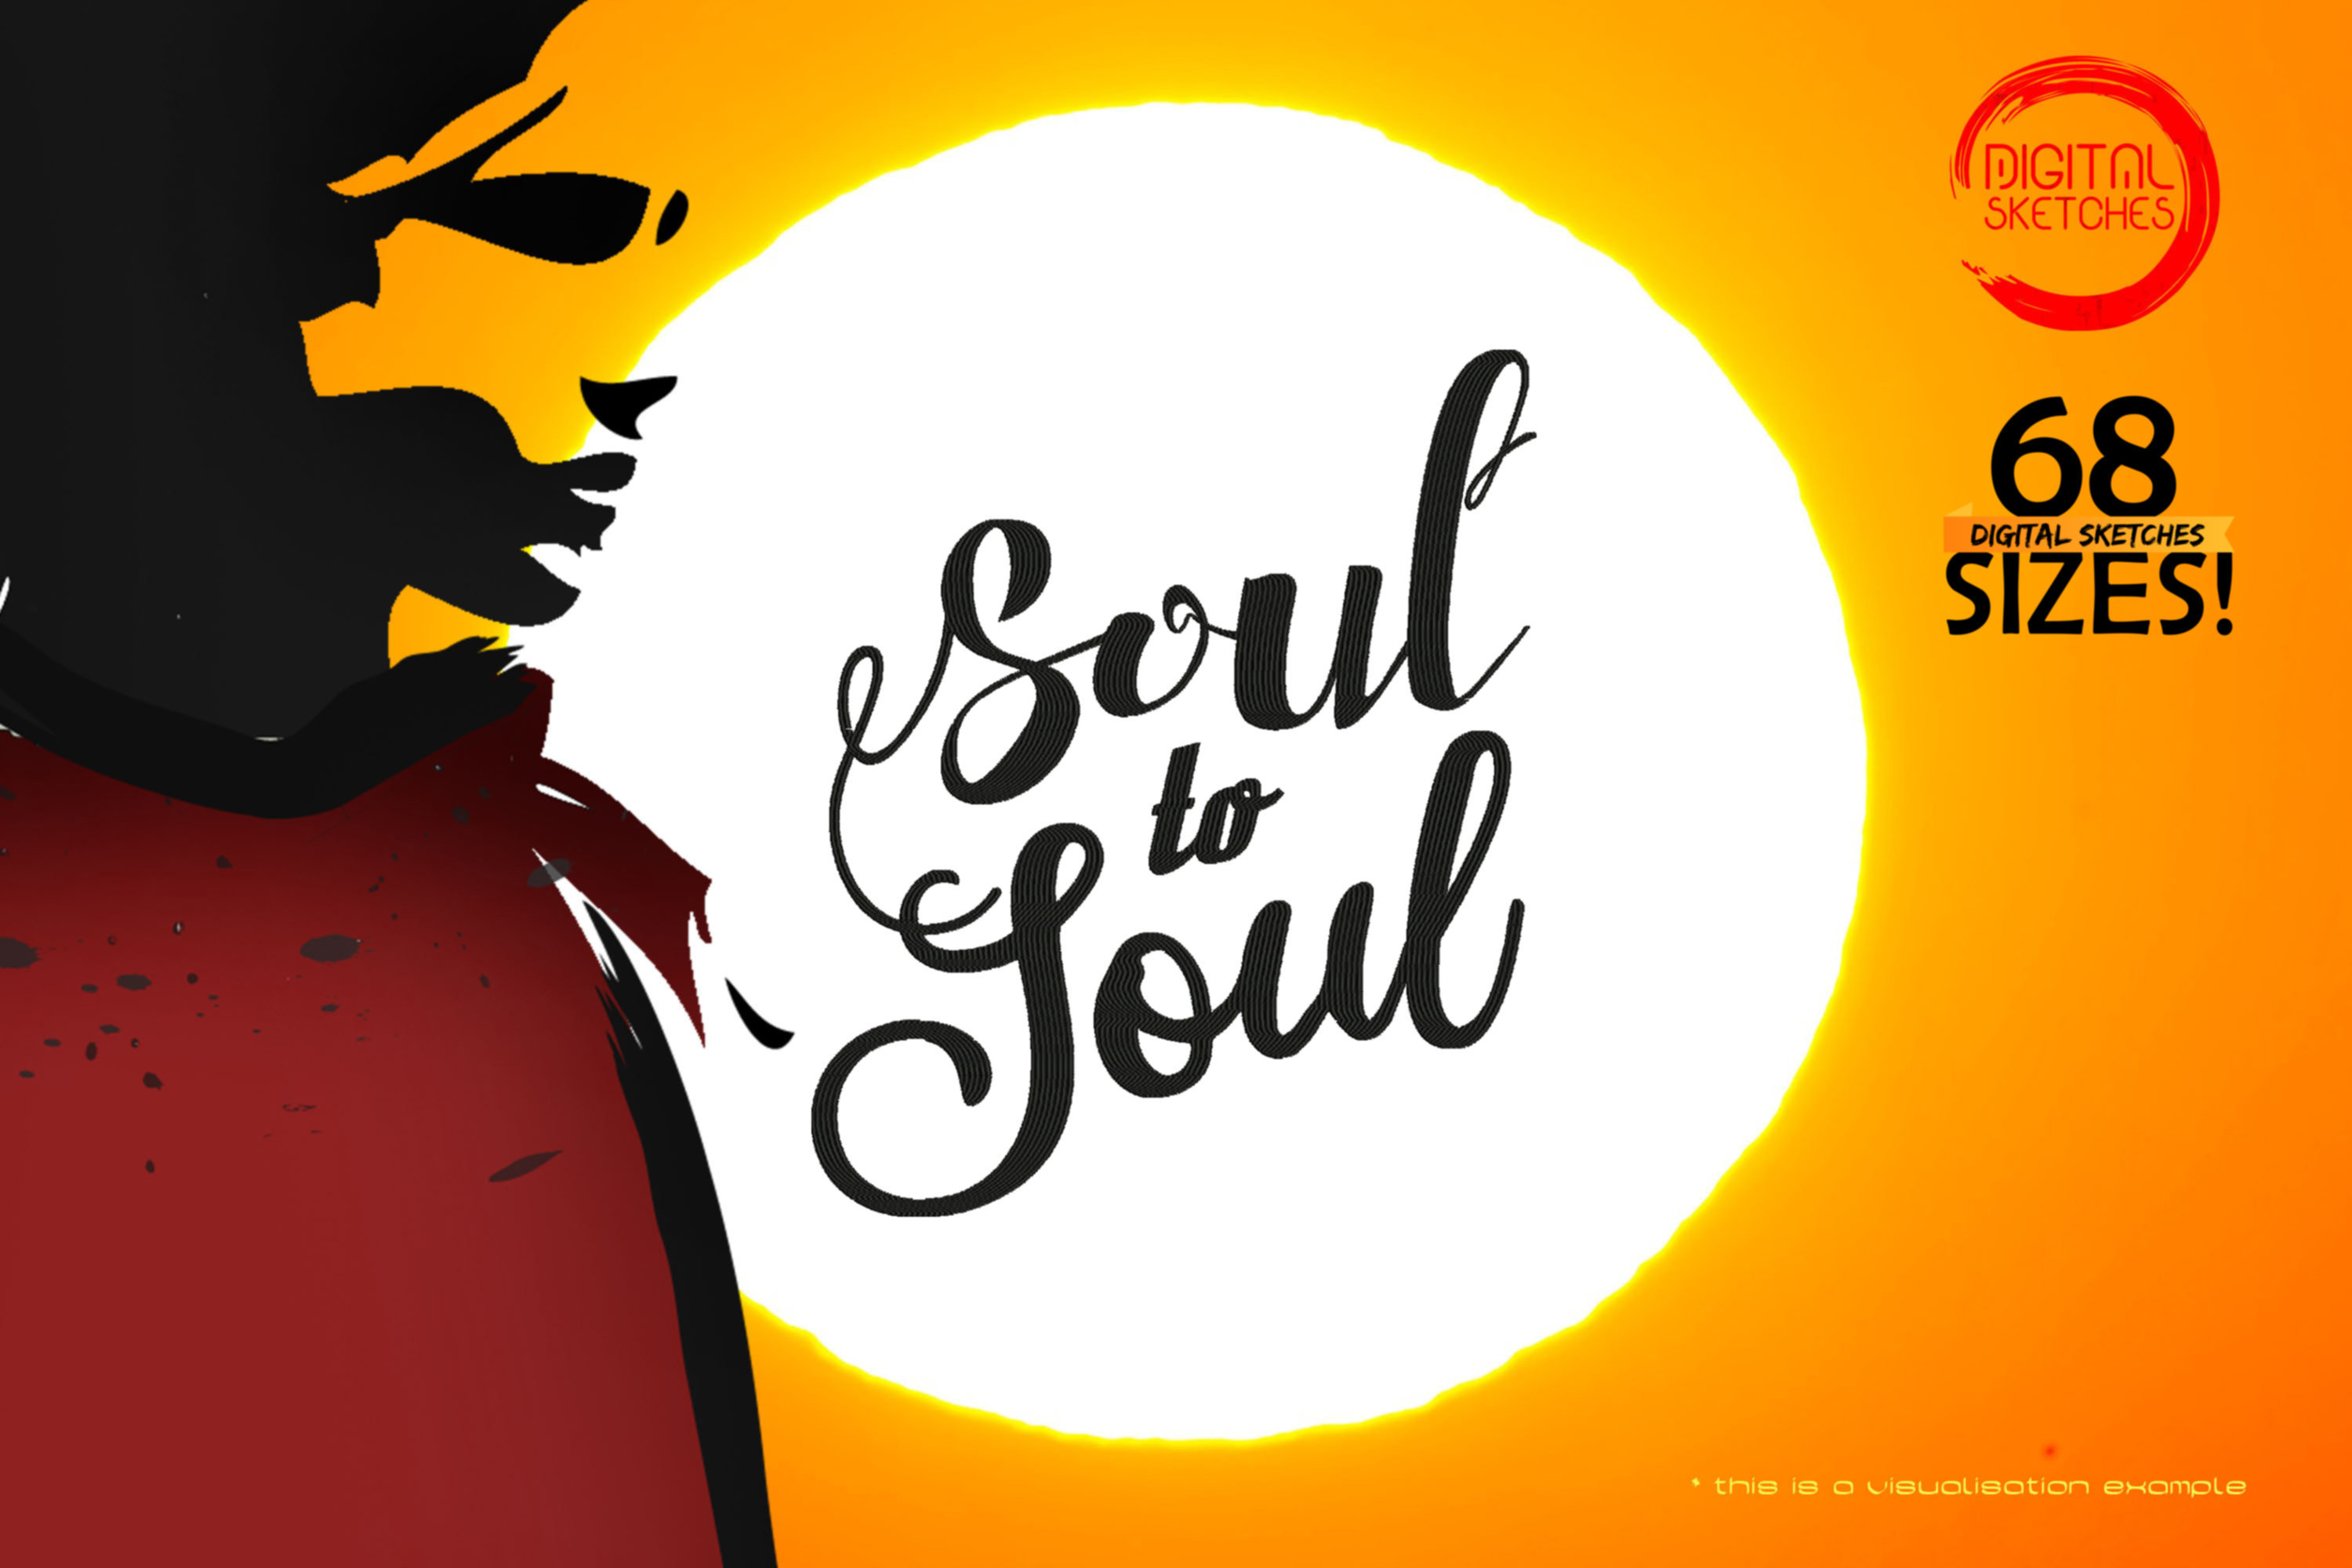 Soul To Soul